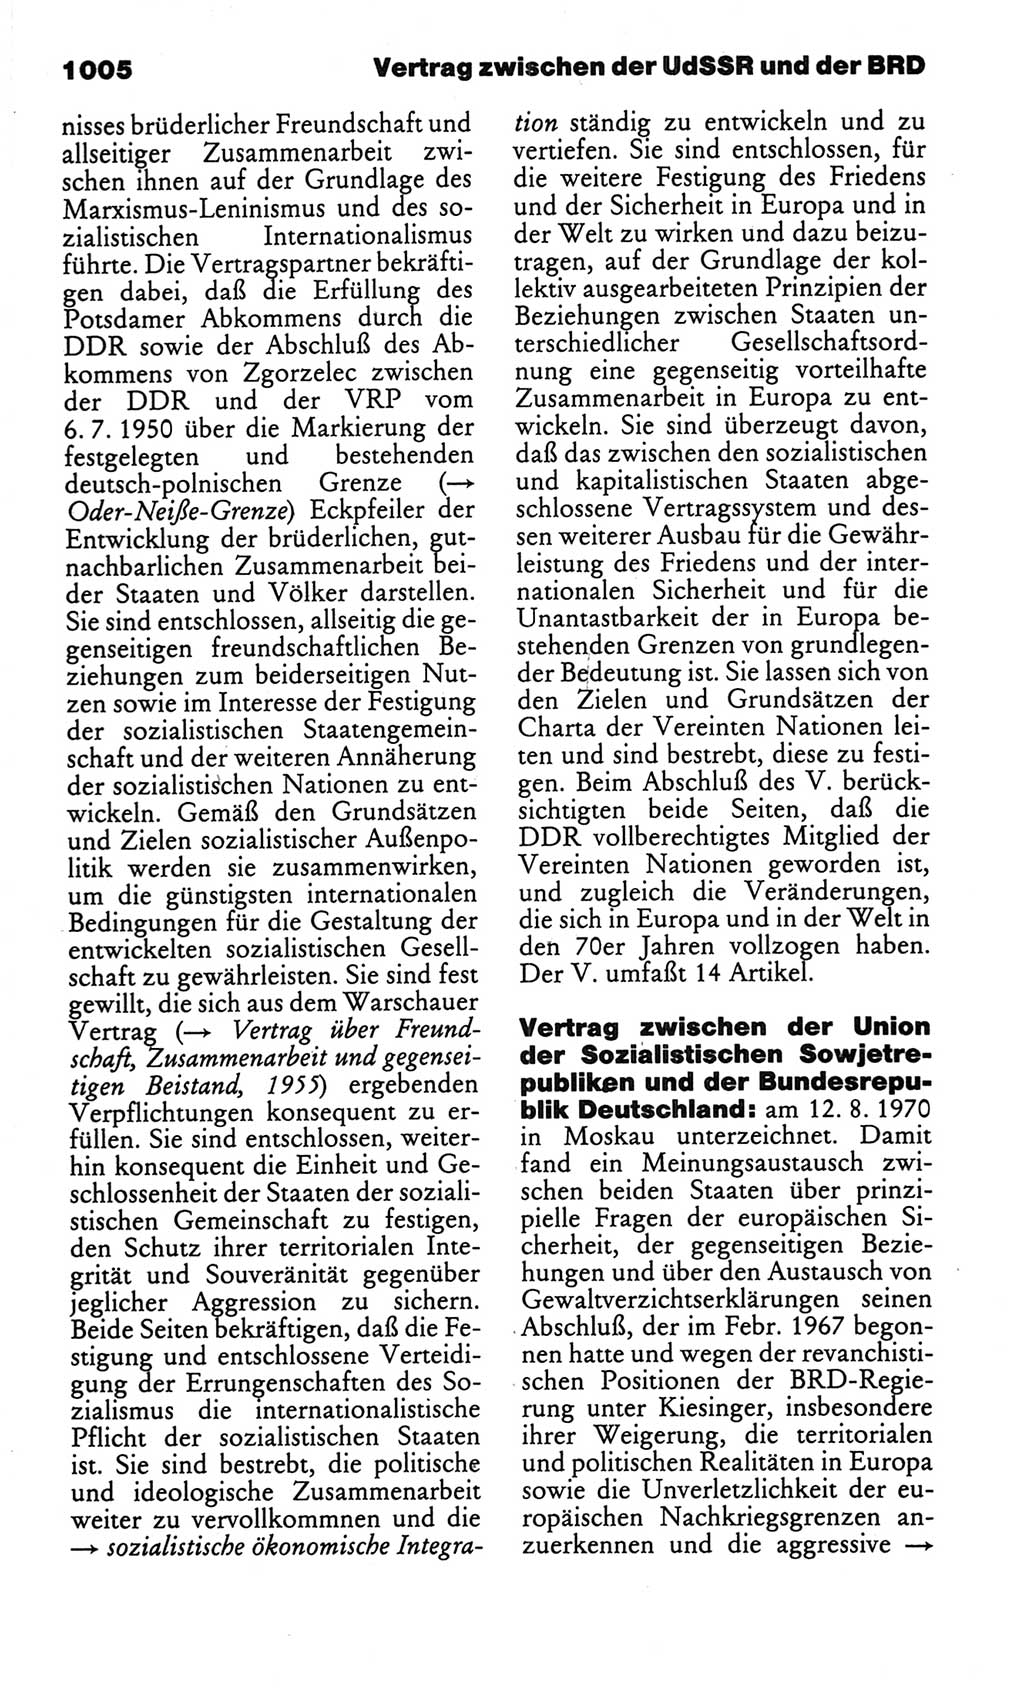 Kleines politisches Wörterbuch [Deutsche Demokratische Republik (DDR)] 1986, Seite 1005 (Kl. pol. Wb. DDR 1986, S. 1005)